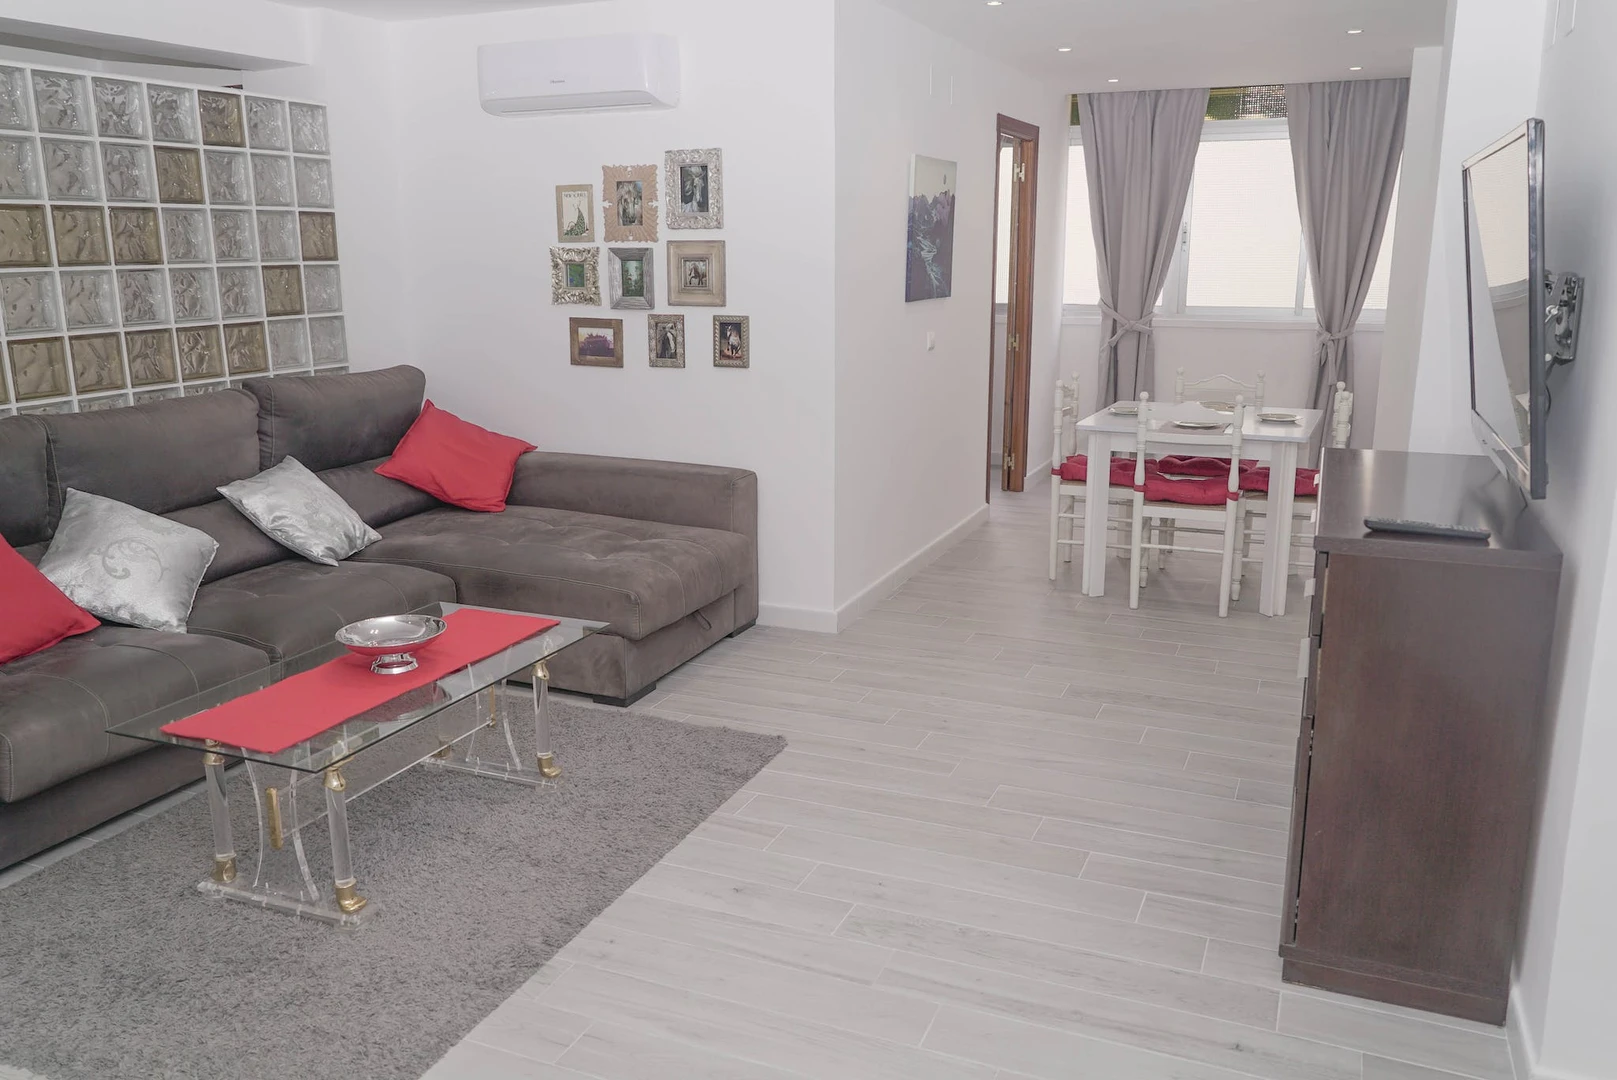 Chambre à louer dans un appartement en colocation à Malaga